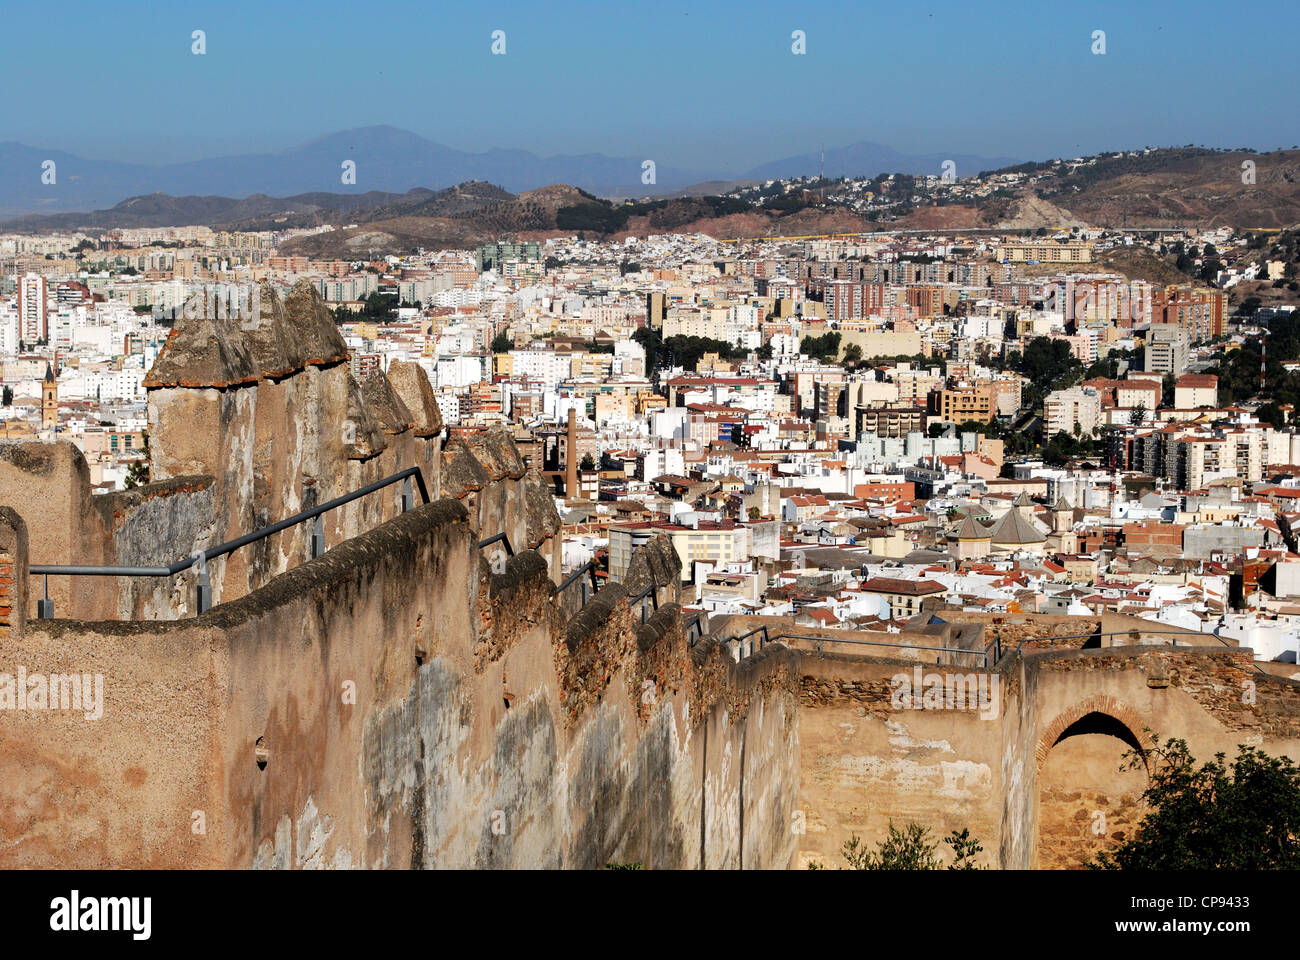 Castello di Gibralfaro (Castillo de Gibralfaro) merlature con vedute sopra la città, Malaga, Andalusia, Spagna, Europa occidentale. Foto Stock